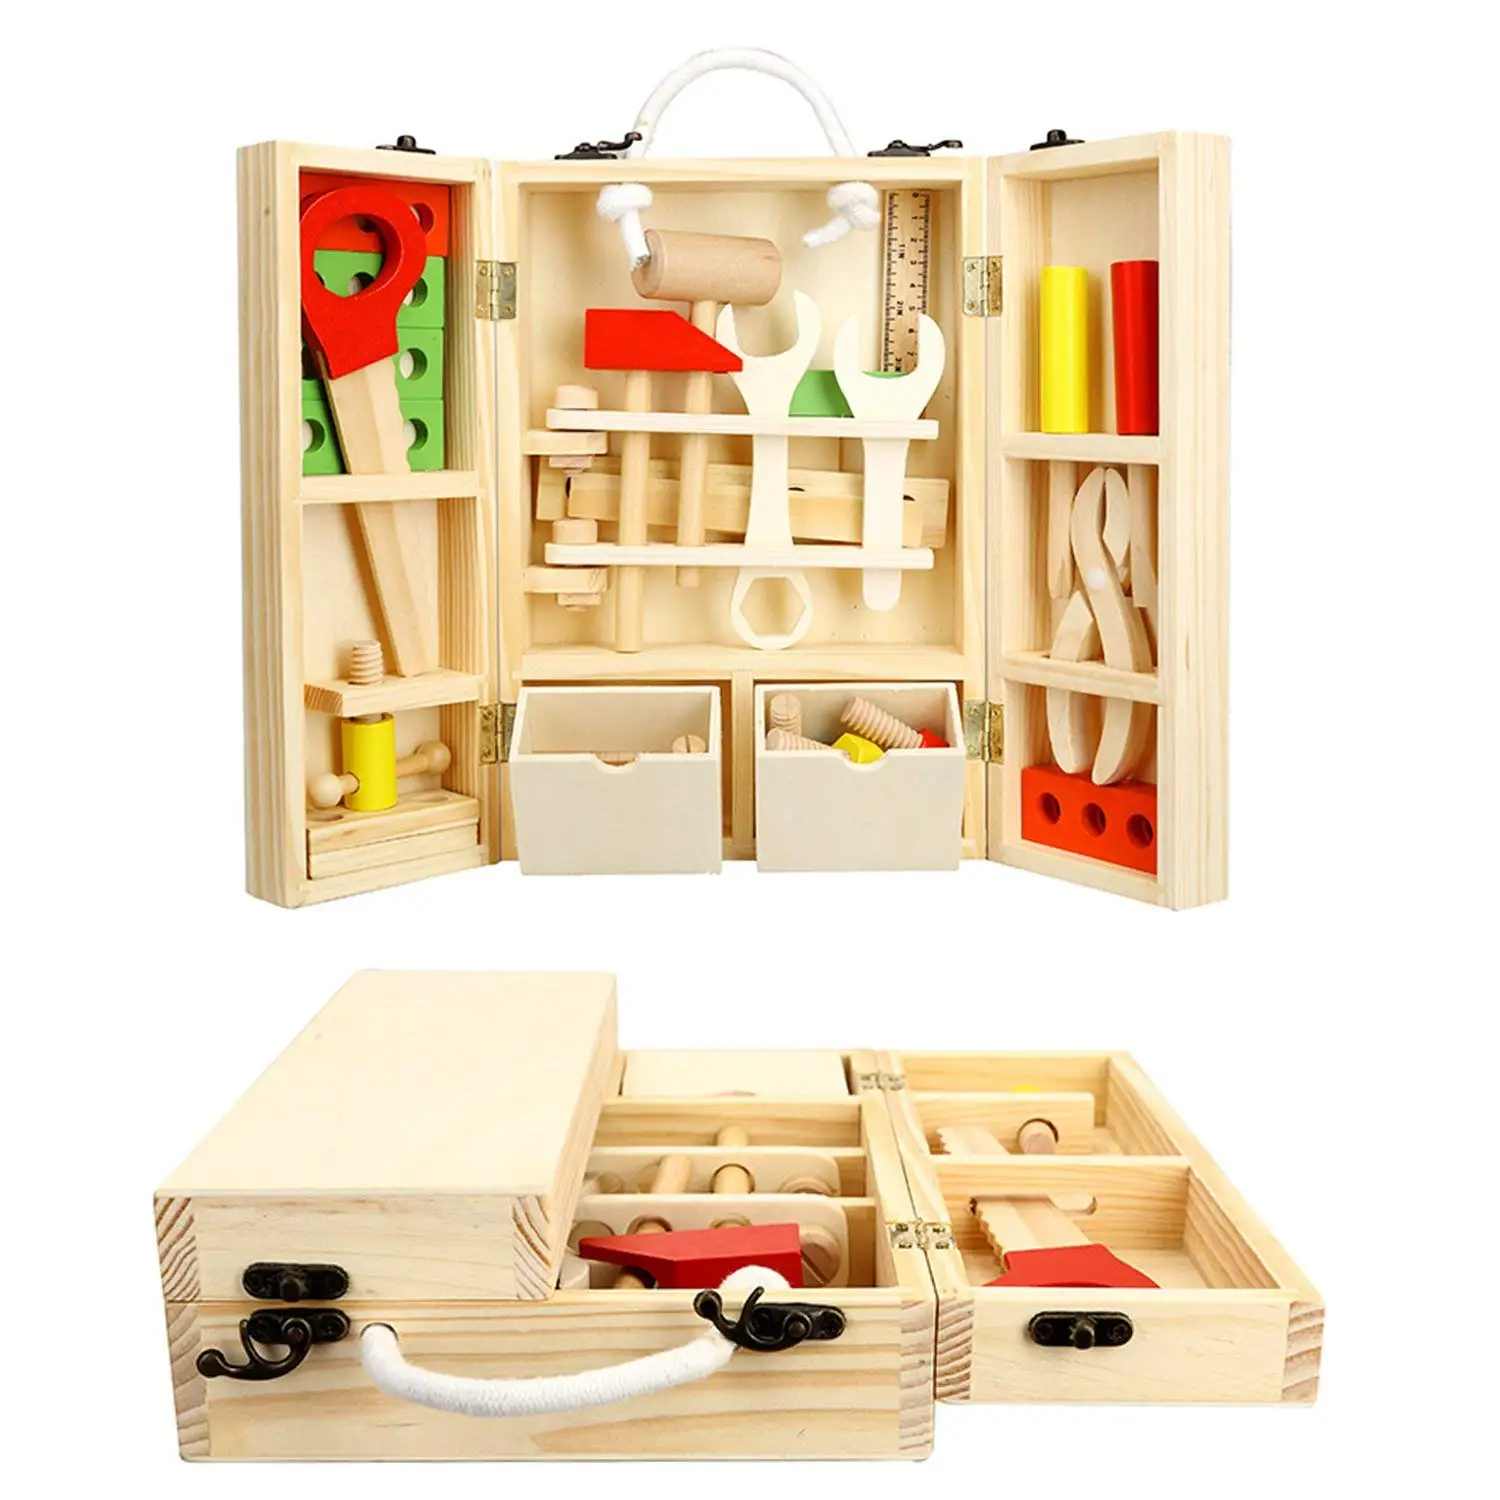 MAGICYOYO ролевые игры деревянный ящик с инструментами игрушки детские развивающие строительные аксессуары наборы игрушек